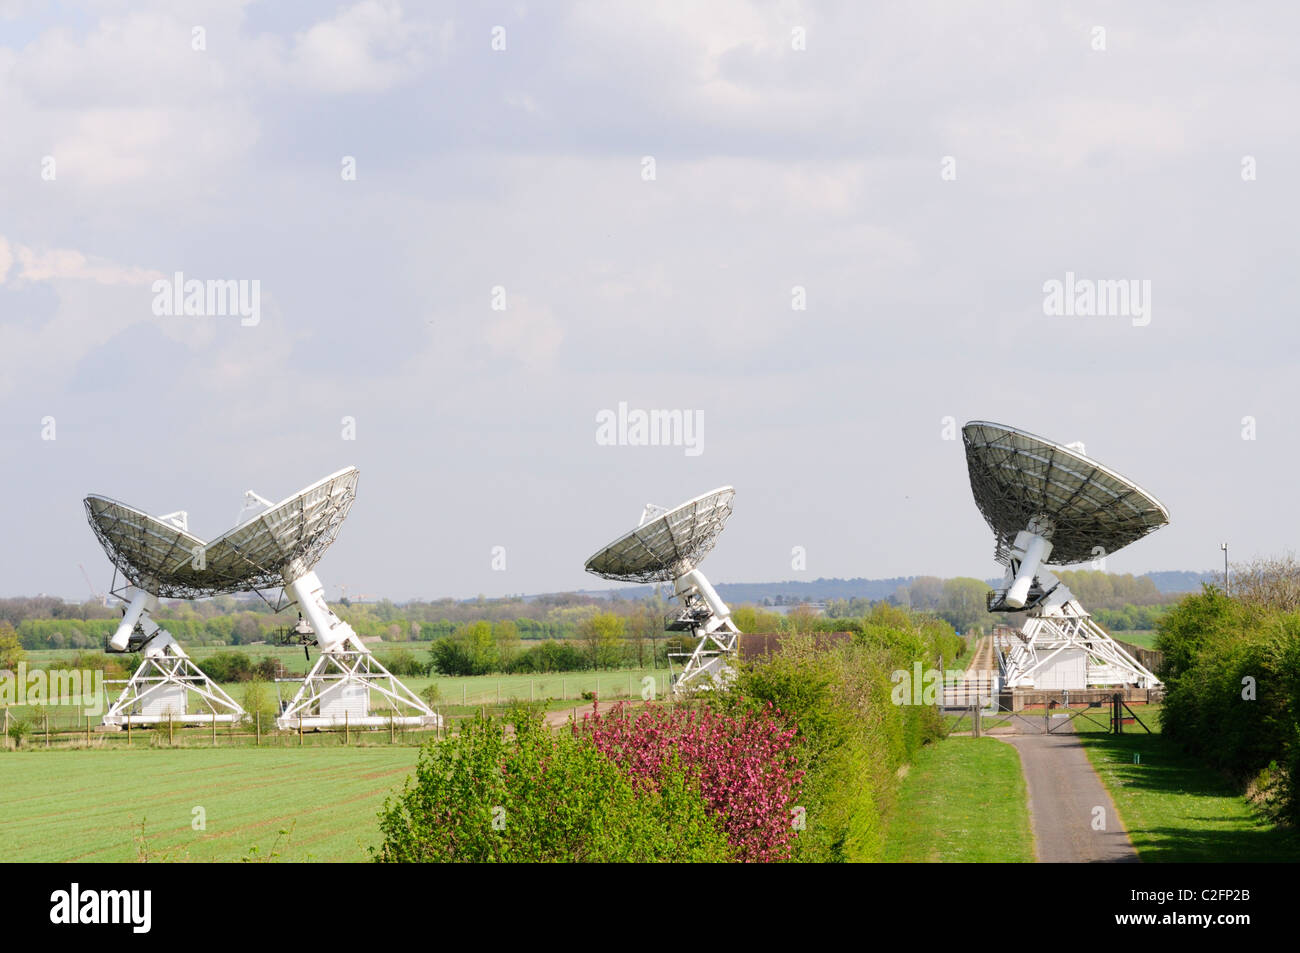 Radioteleskope auf die des Radio Astronomy Observatory, Lords Brücke, Barton, Cambridgeshire, England, Vereinigtes Königreich Stockfoto